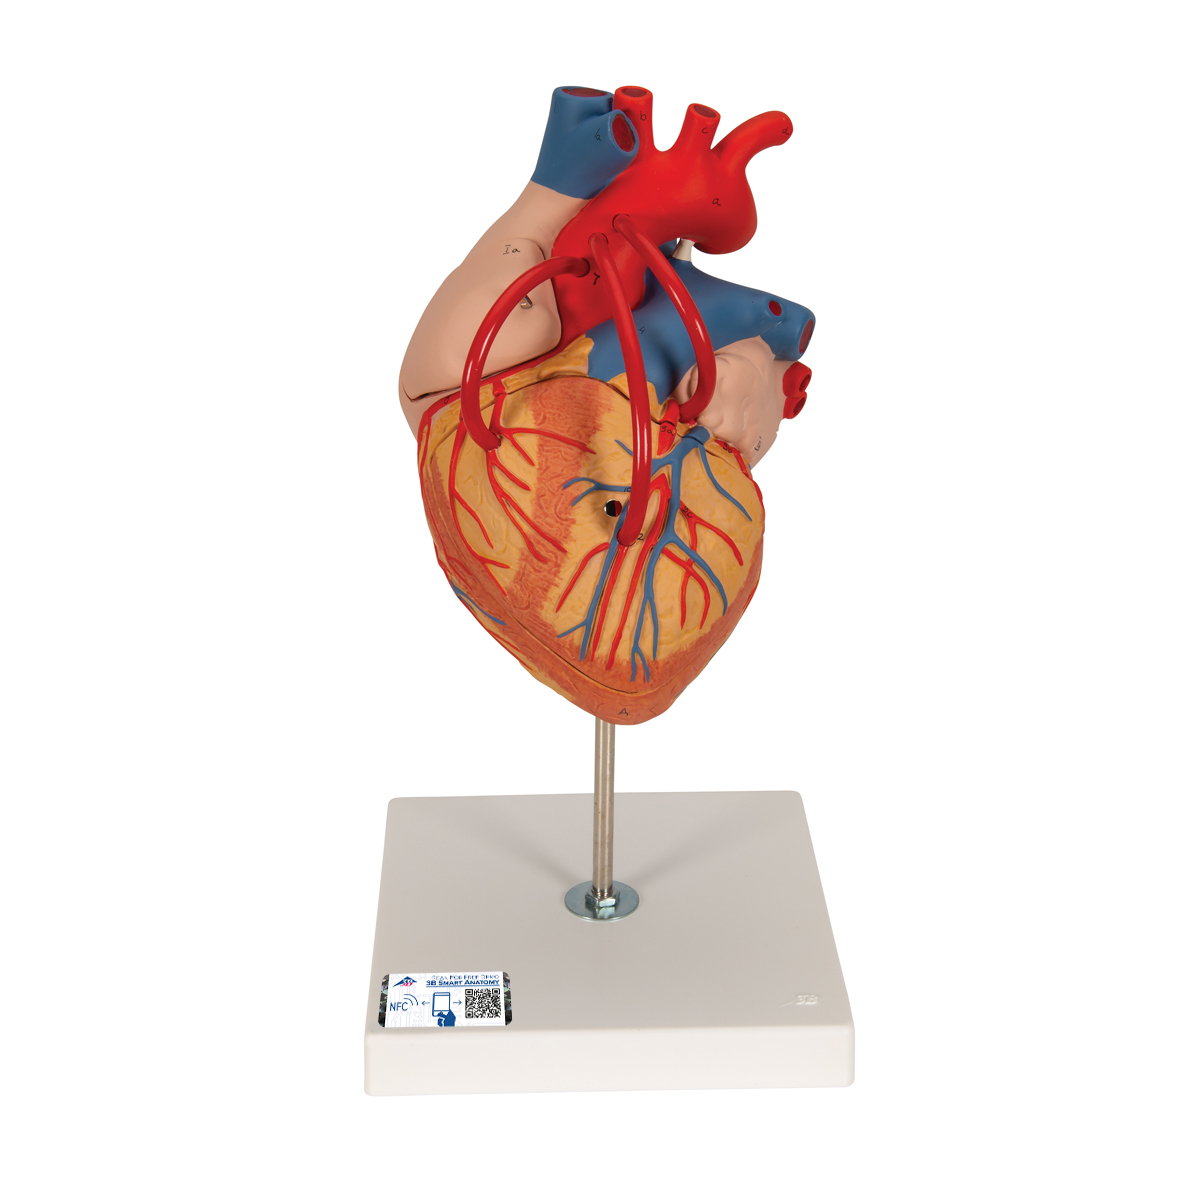 Herzmodell mit Bypass, 2-fache Größe, 4-teilig - 3B Smart Anatomy, Bestellnummer 1000263, G06, 3B Scientific